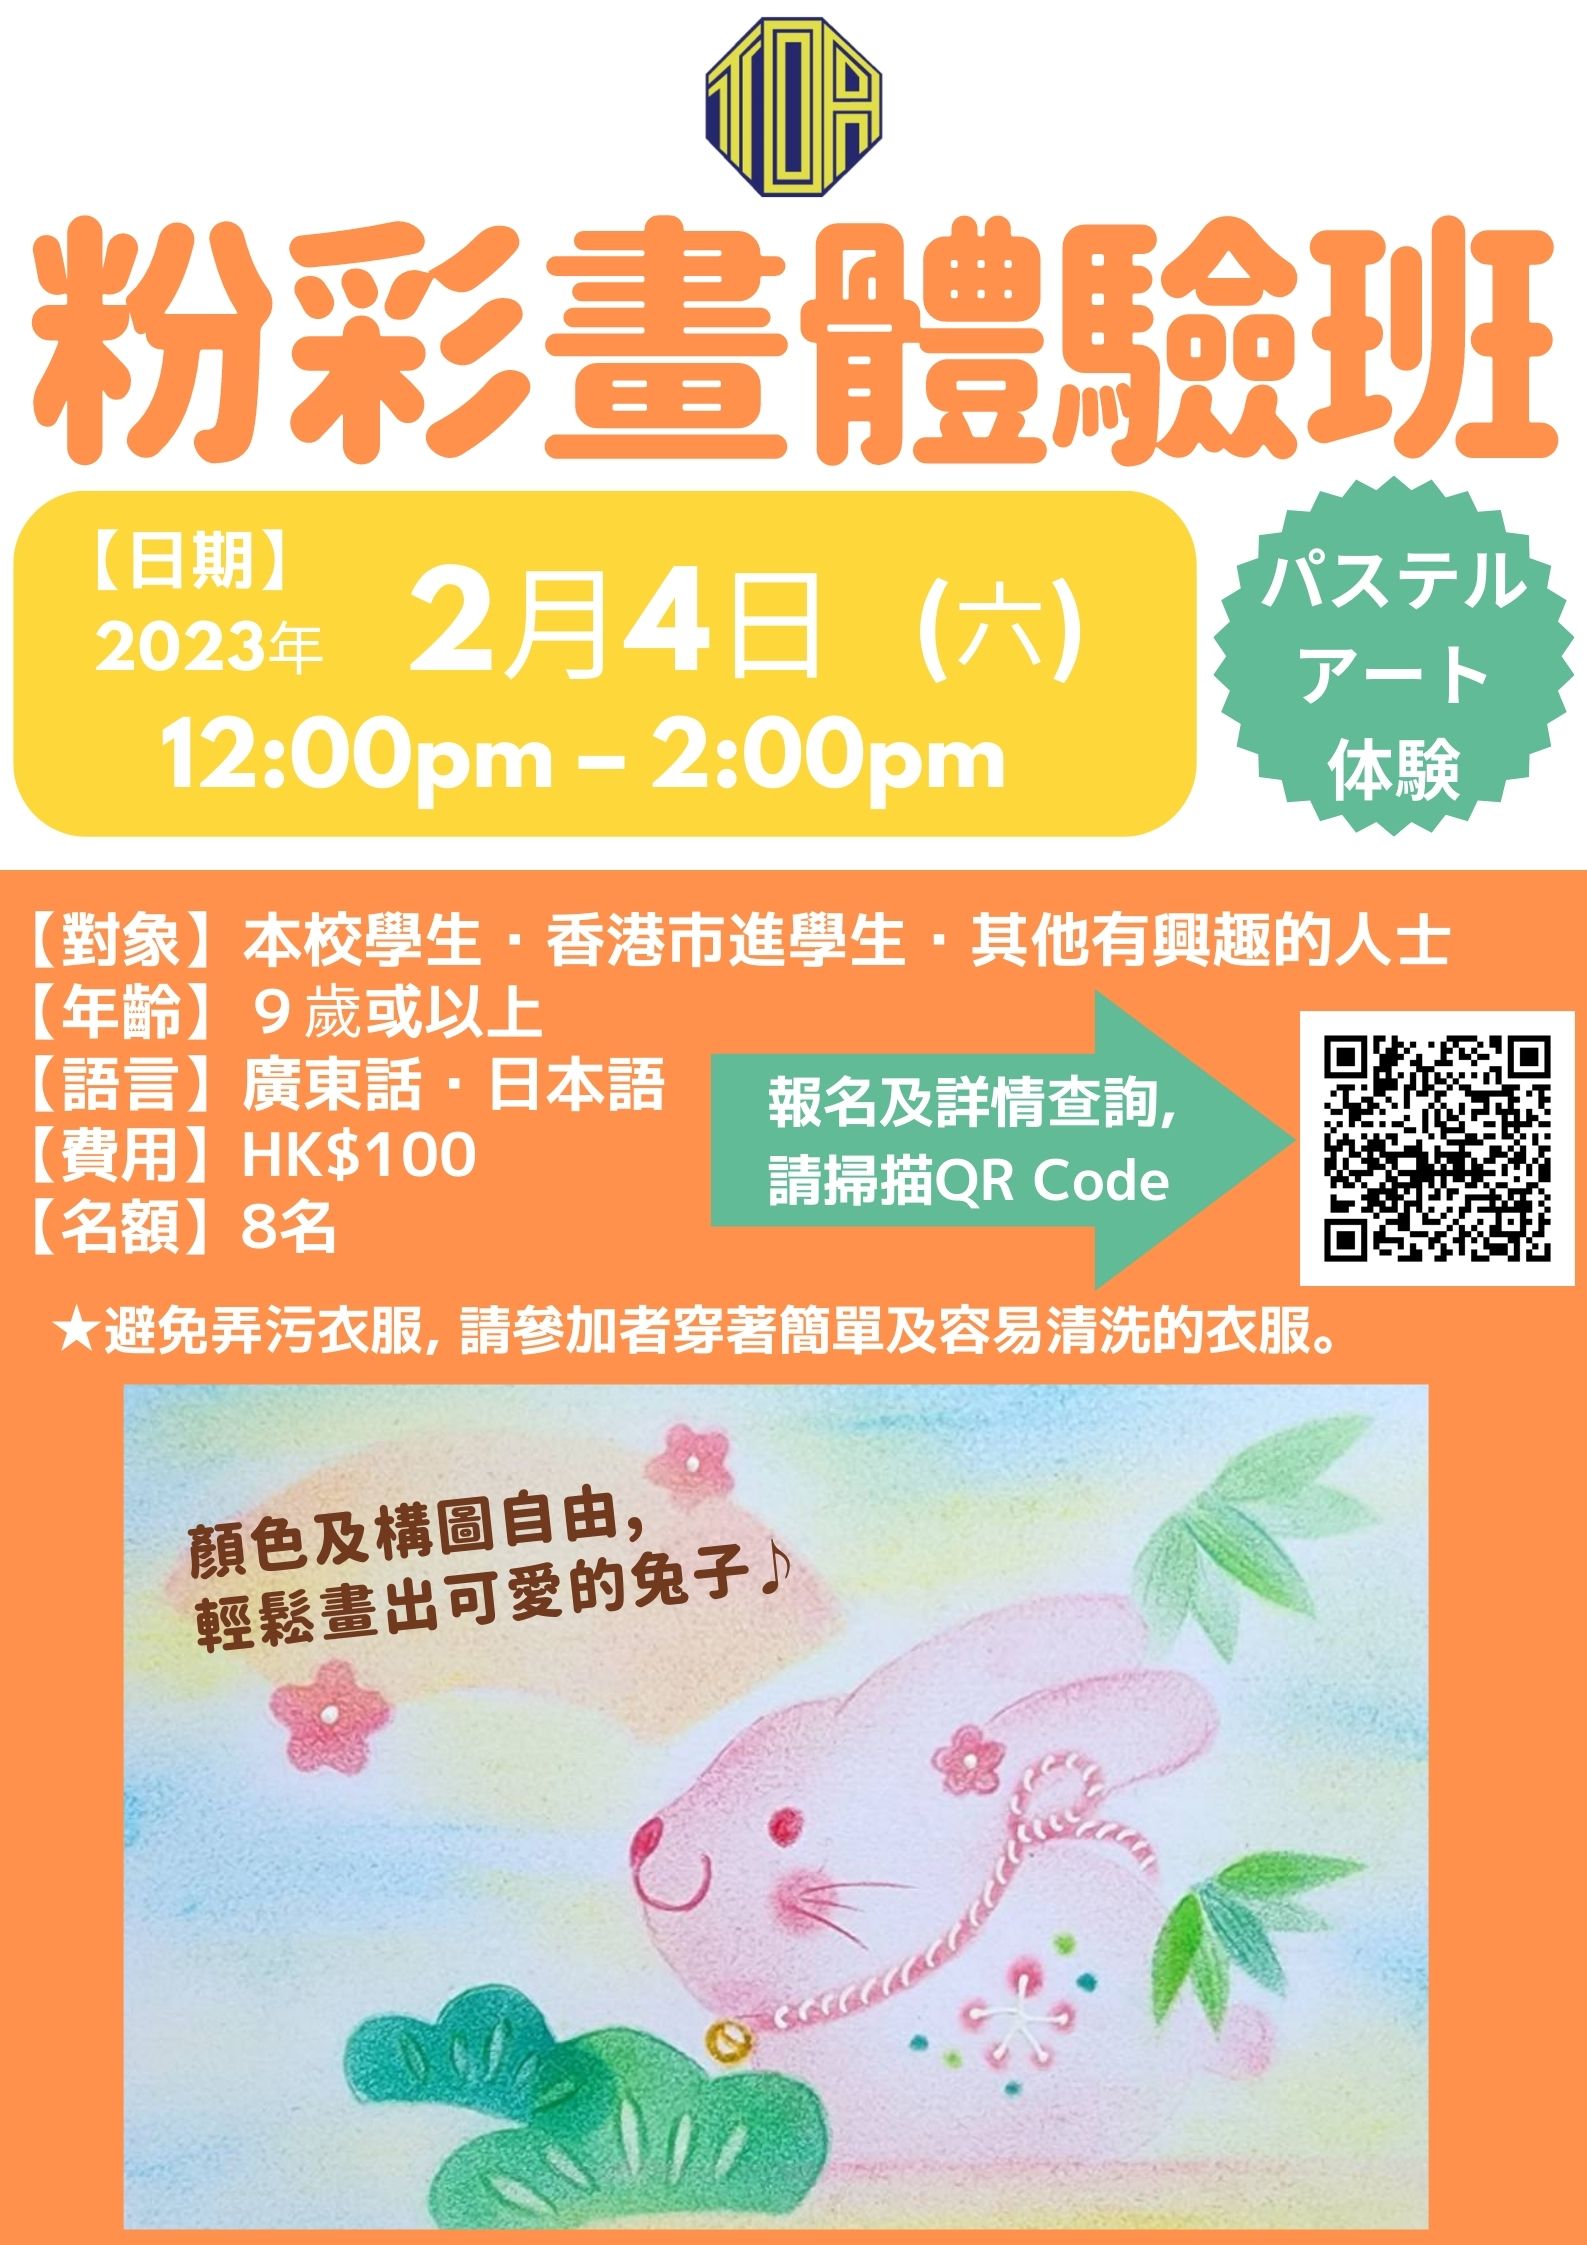 2月4日(六) 粉彩畫體驗班／パステルアート体験